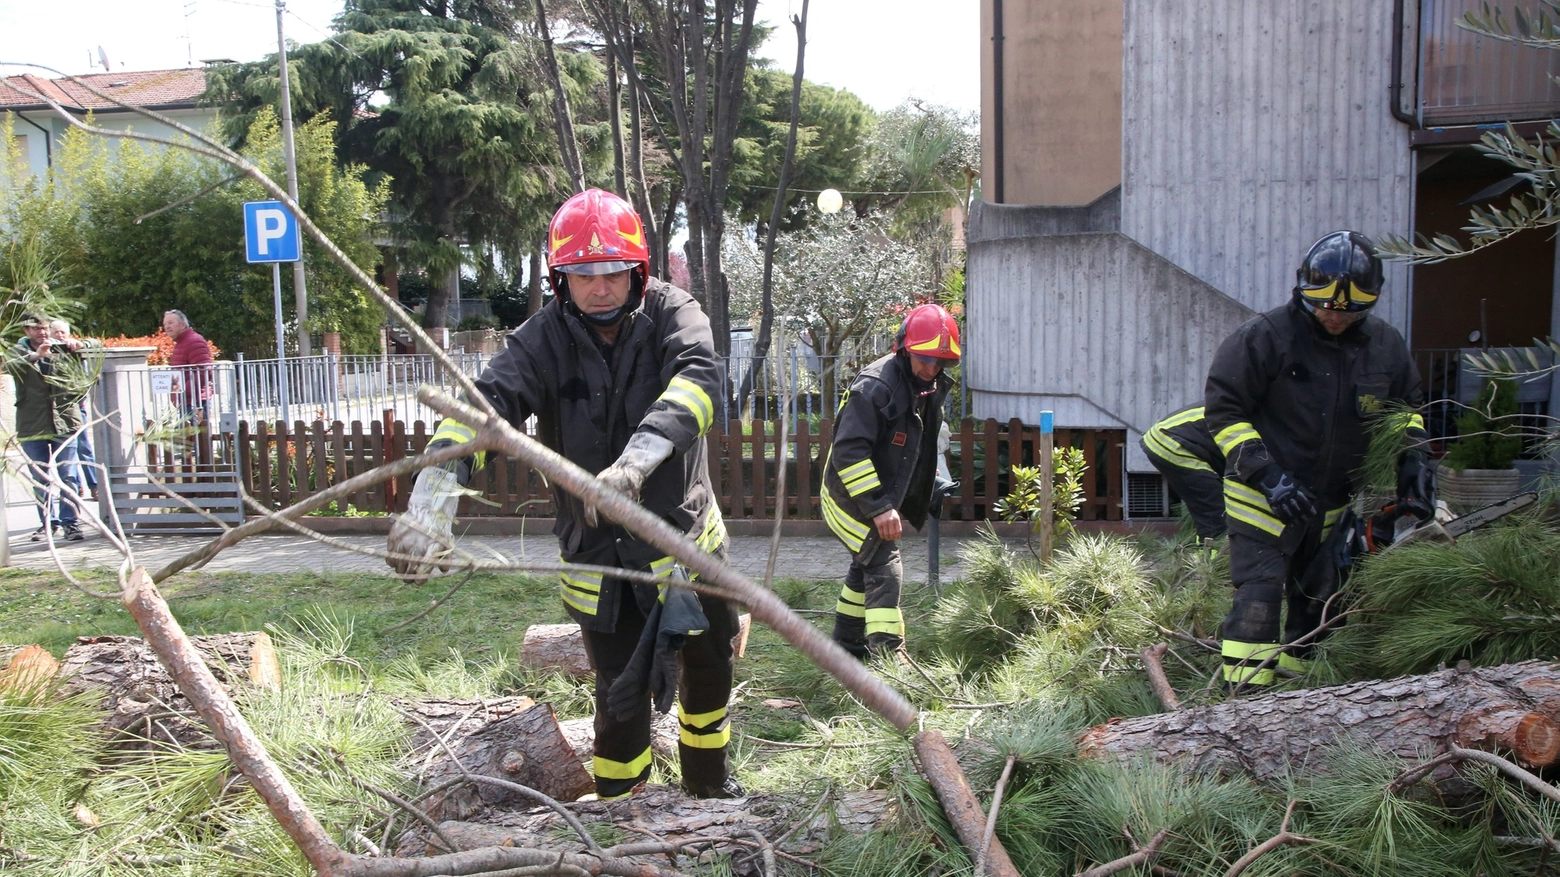 Decine gli interventi dei vigili del fuoco per rami e alberi caduti (foto Ravaglia)